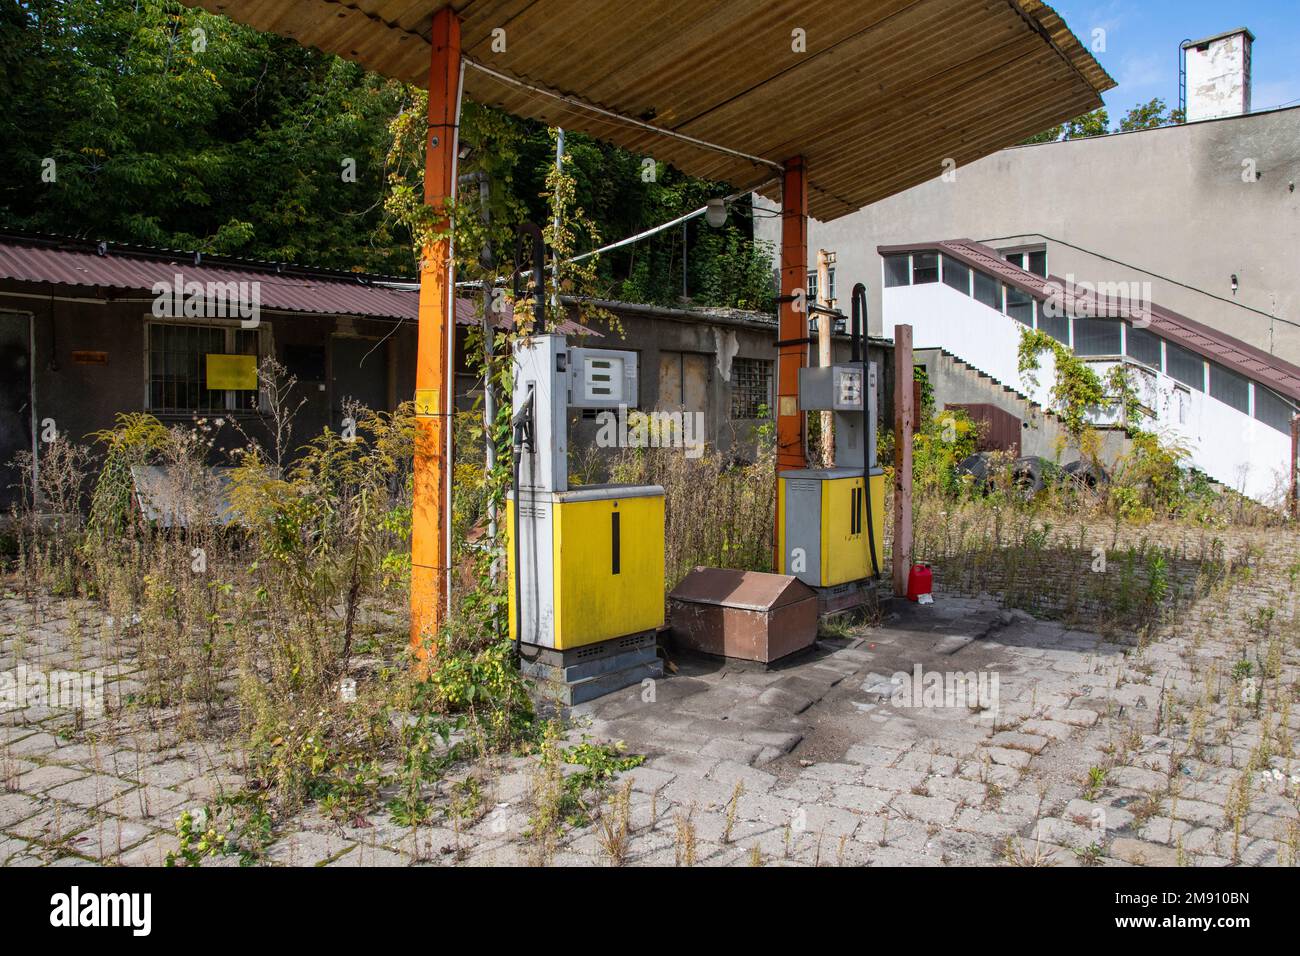 Une ancienne station de gaz rouillé et des distributeurs abandonnés et surcultivés avec de la végétation par une journée ensoleillée. Été. Banque D'Images